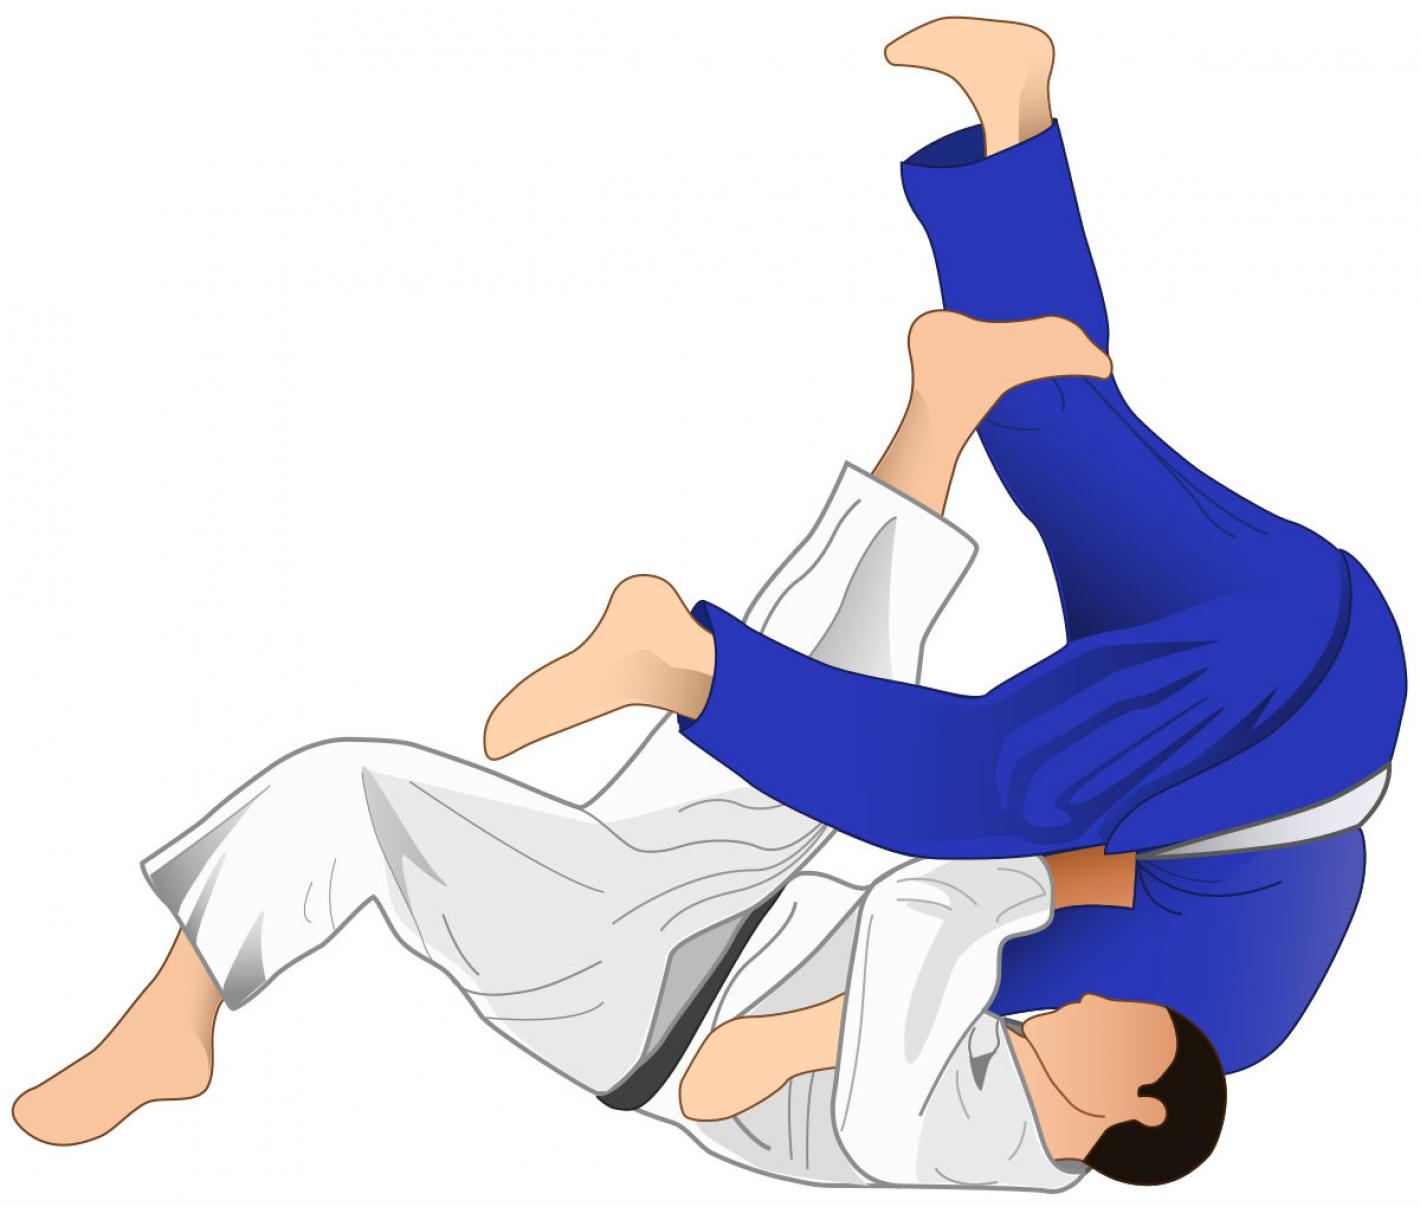 images/puglia/judo/medium/judo-base.jpg